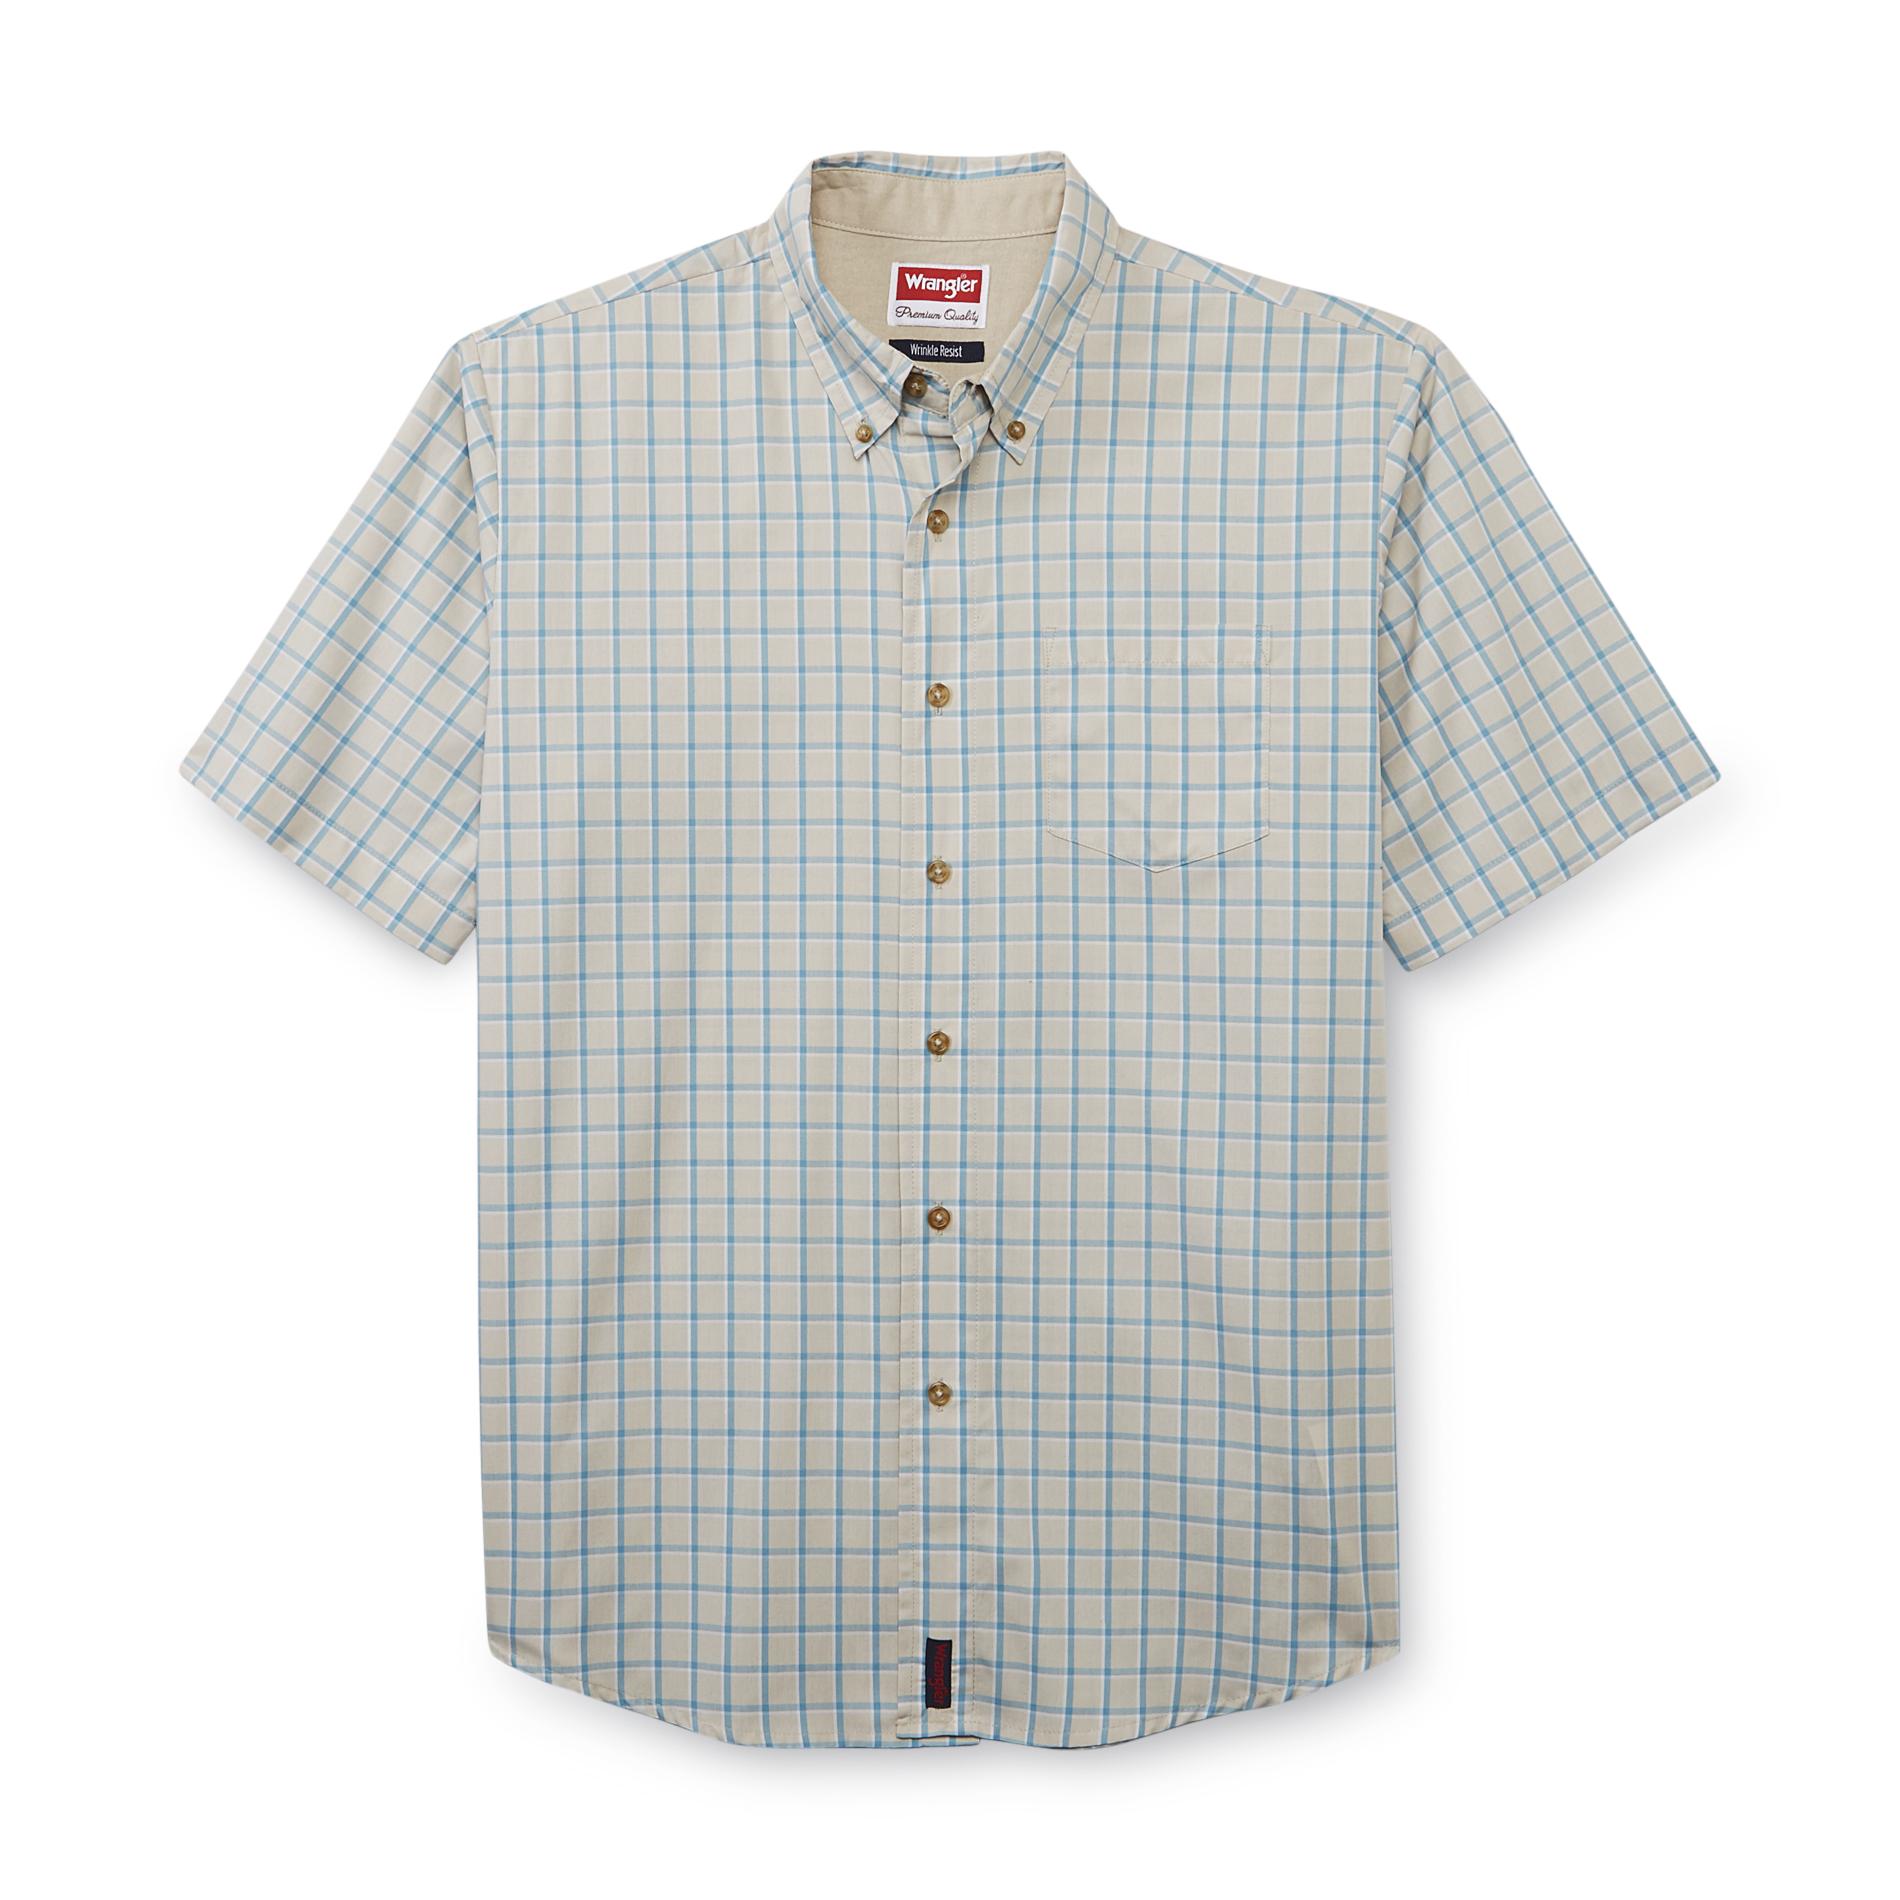 Wrangler Men's Short-Sleeve Shirt - Windowpane Plaid